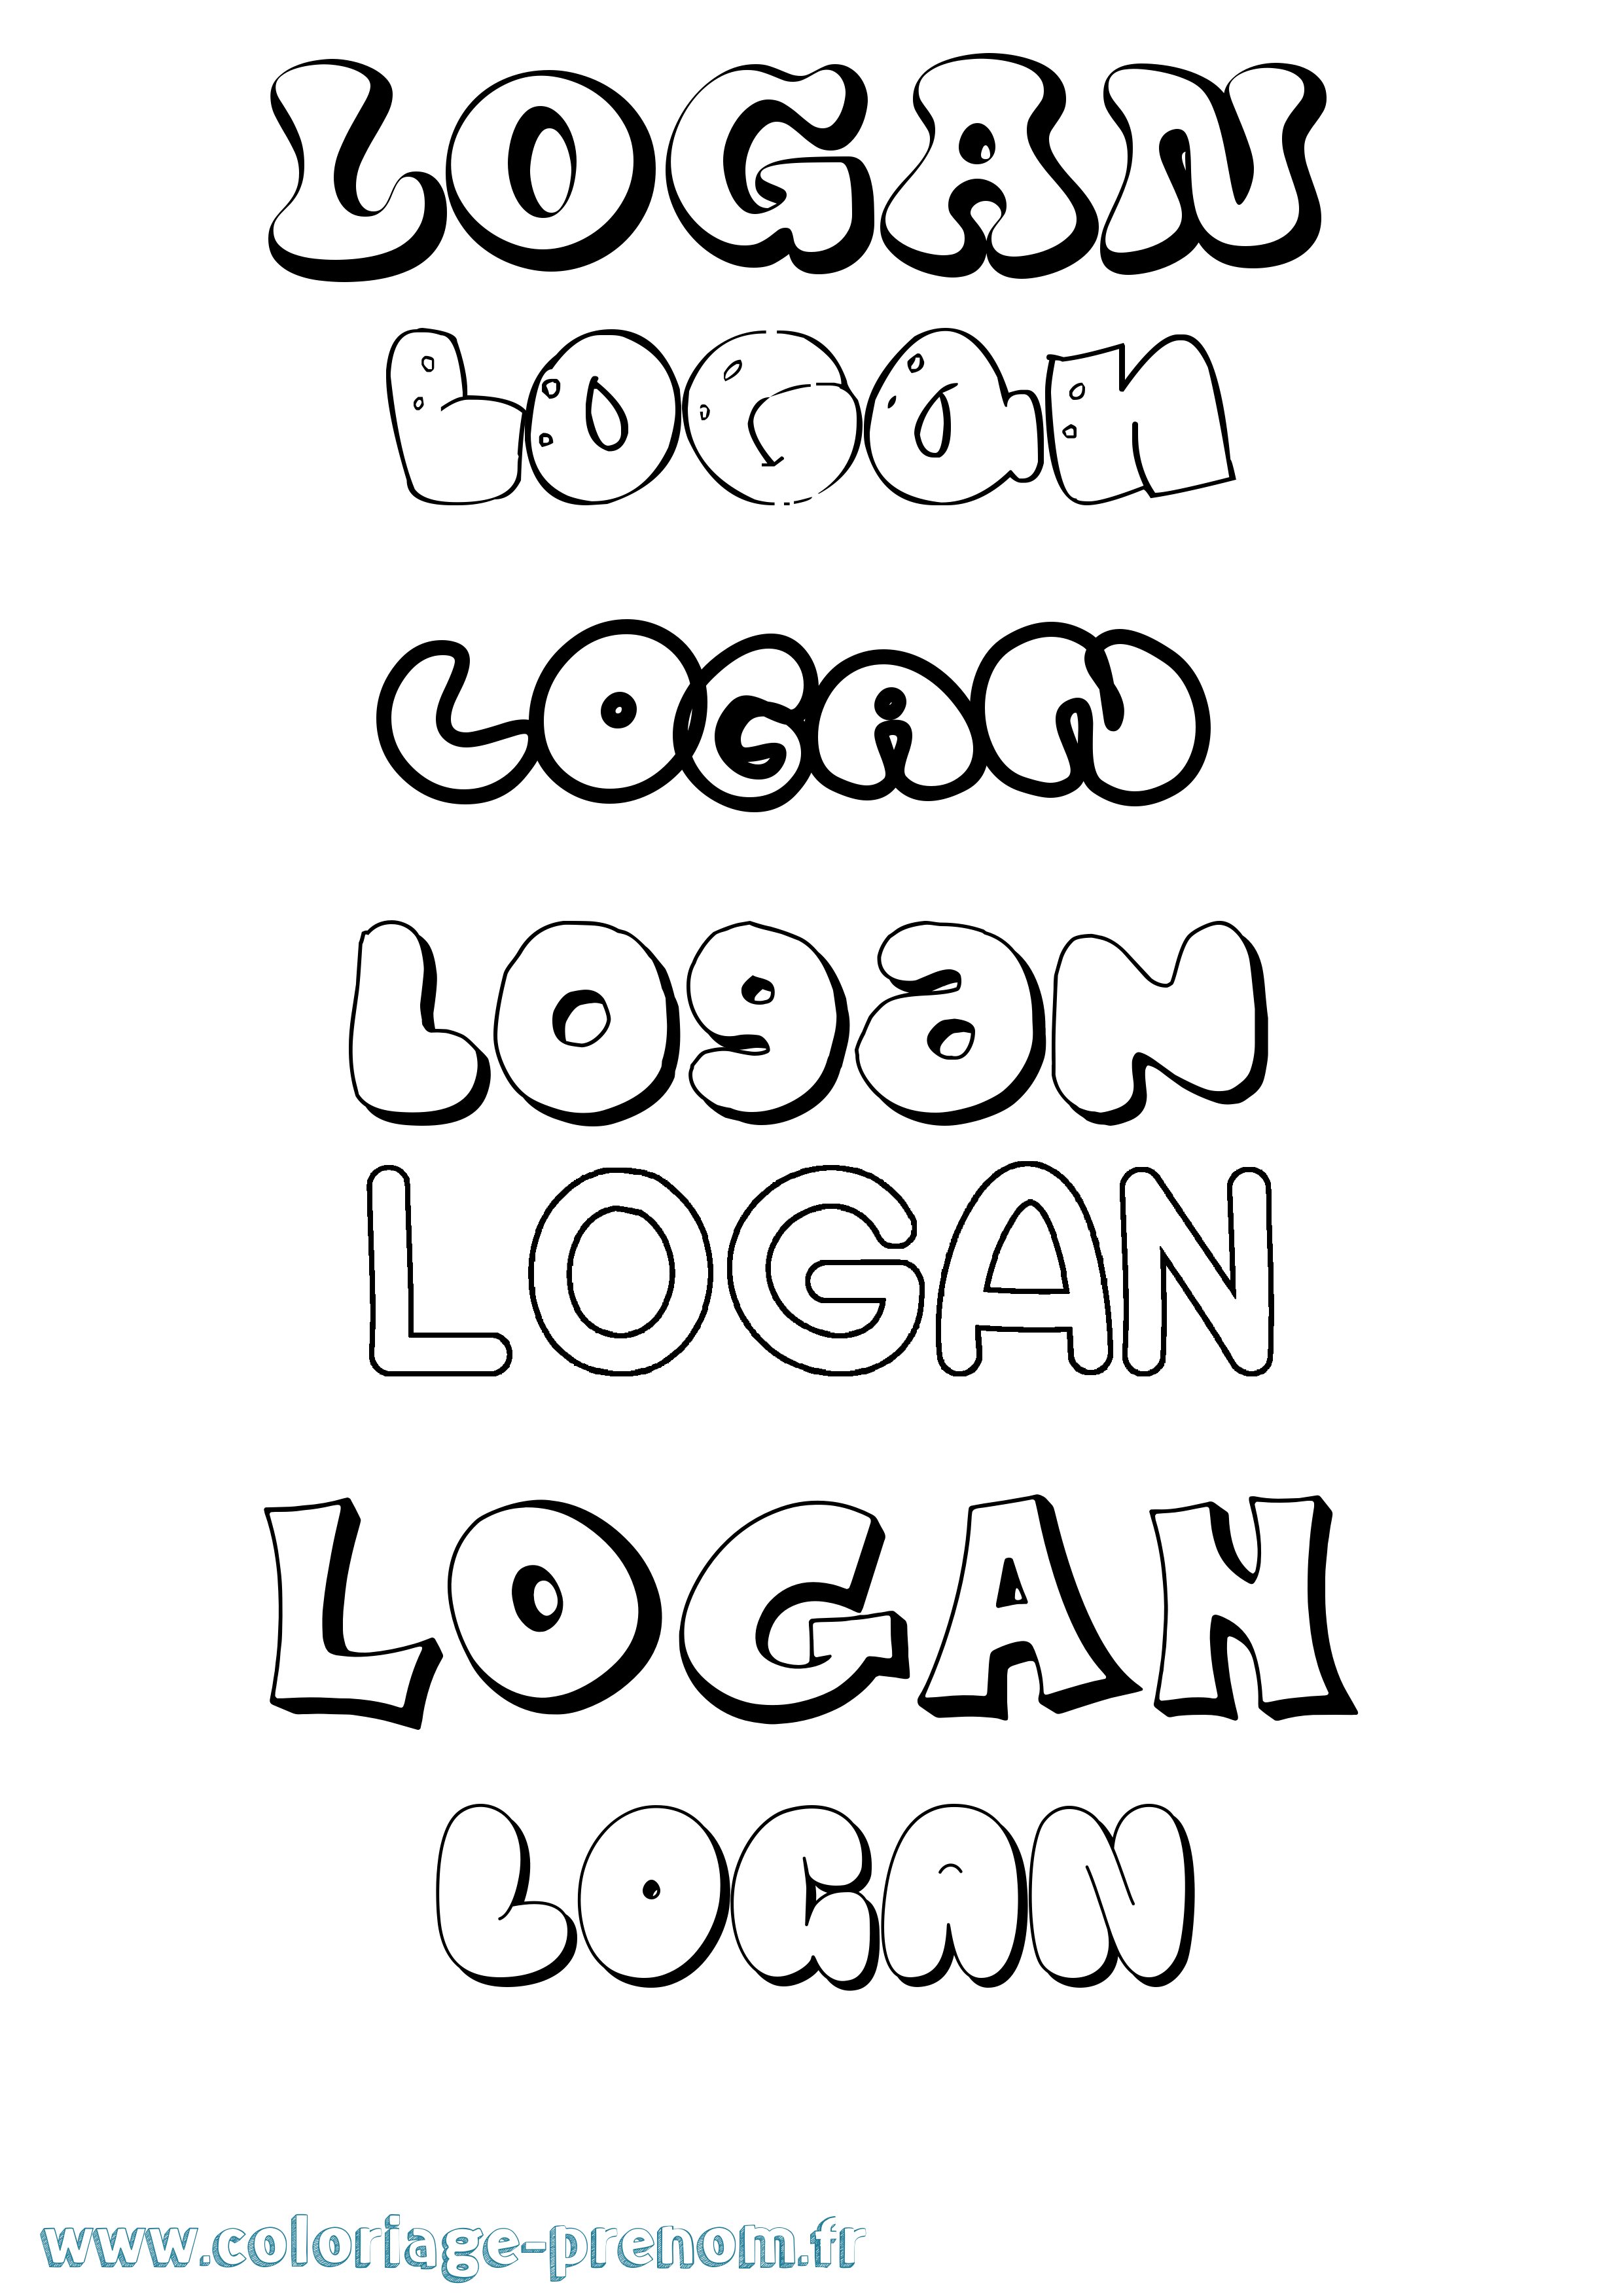 Coloriage prénom Logan Bubble